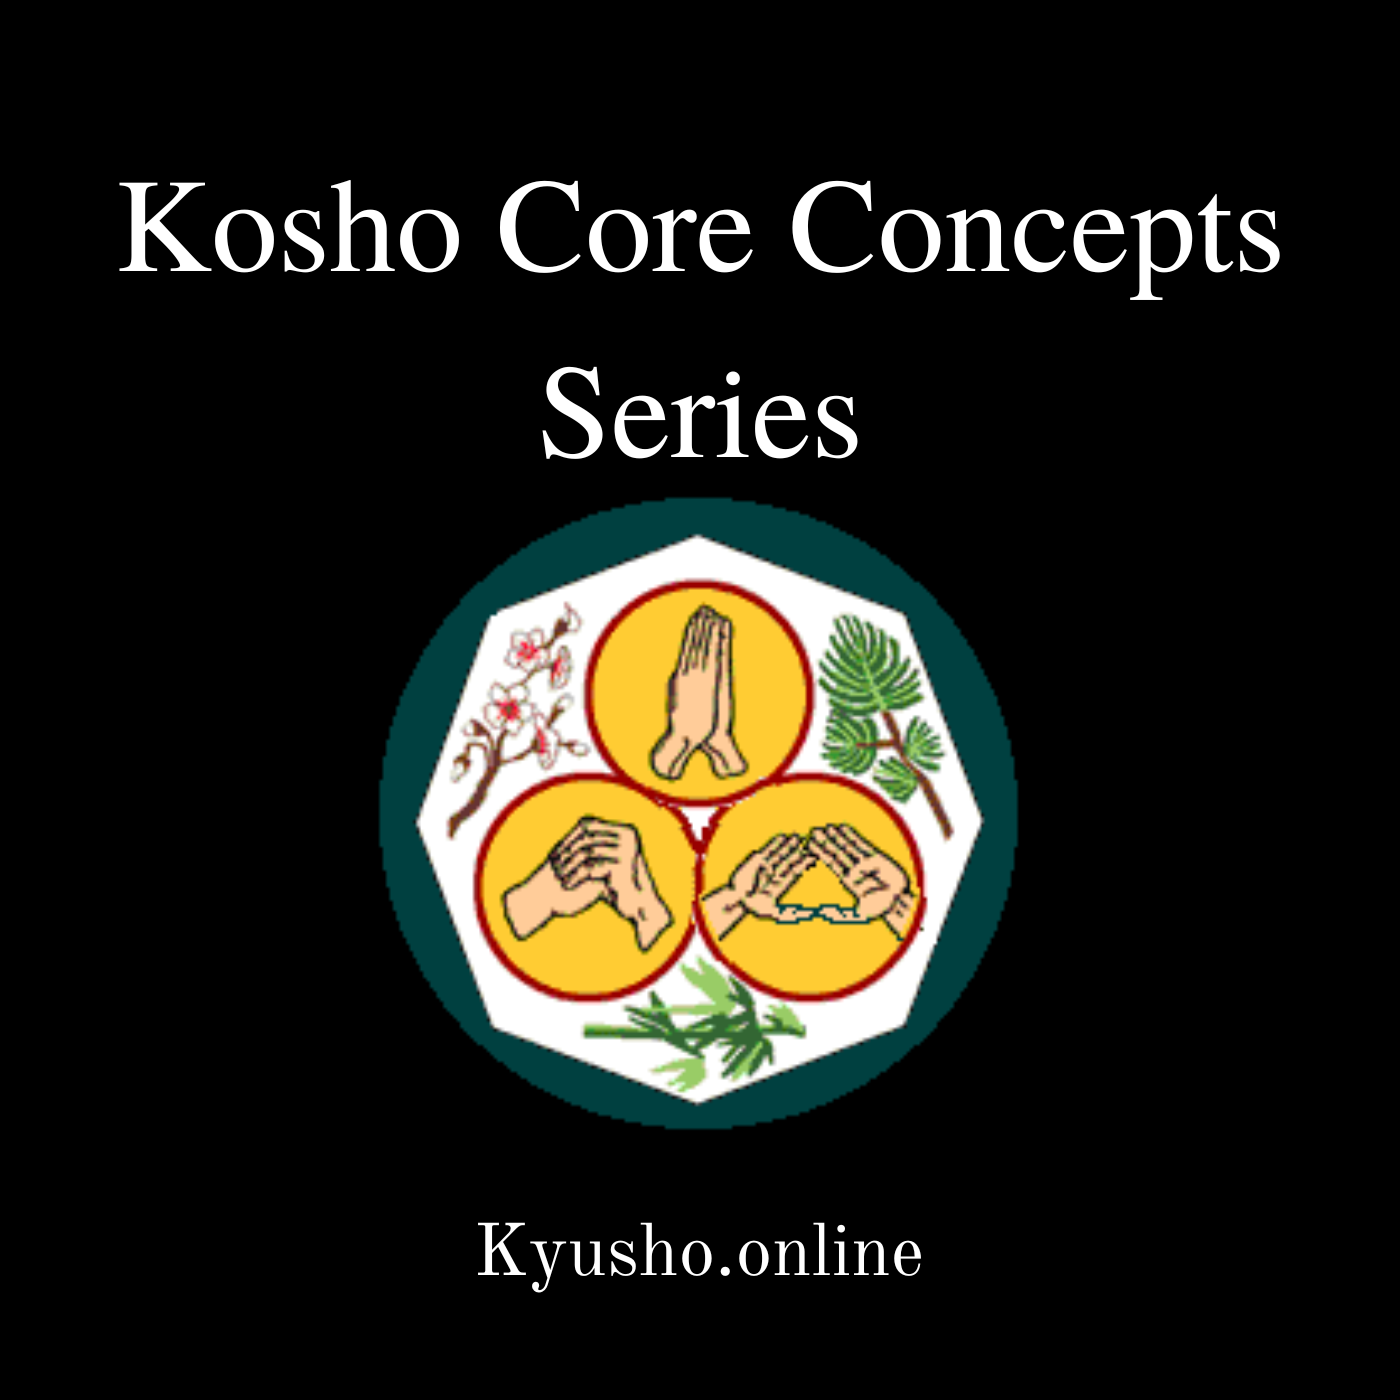 * Kosho Core Concepts Series